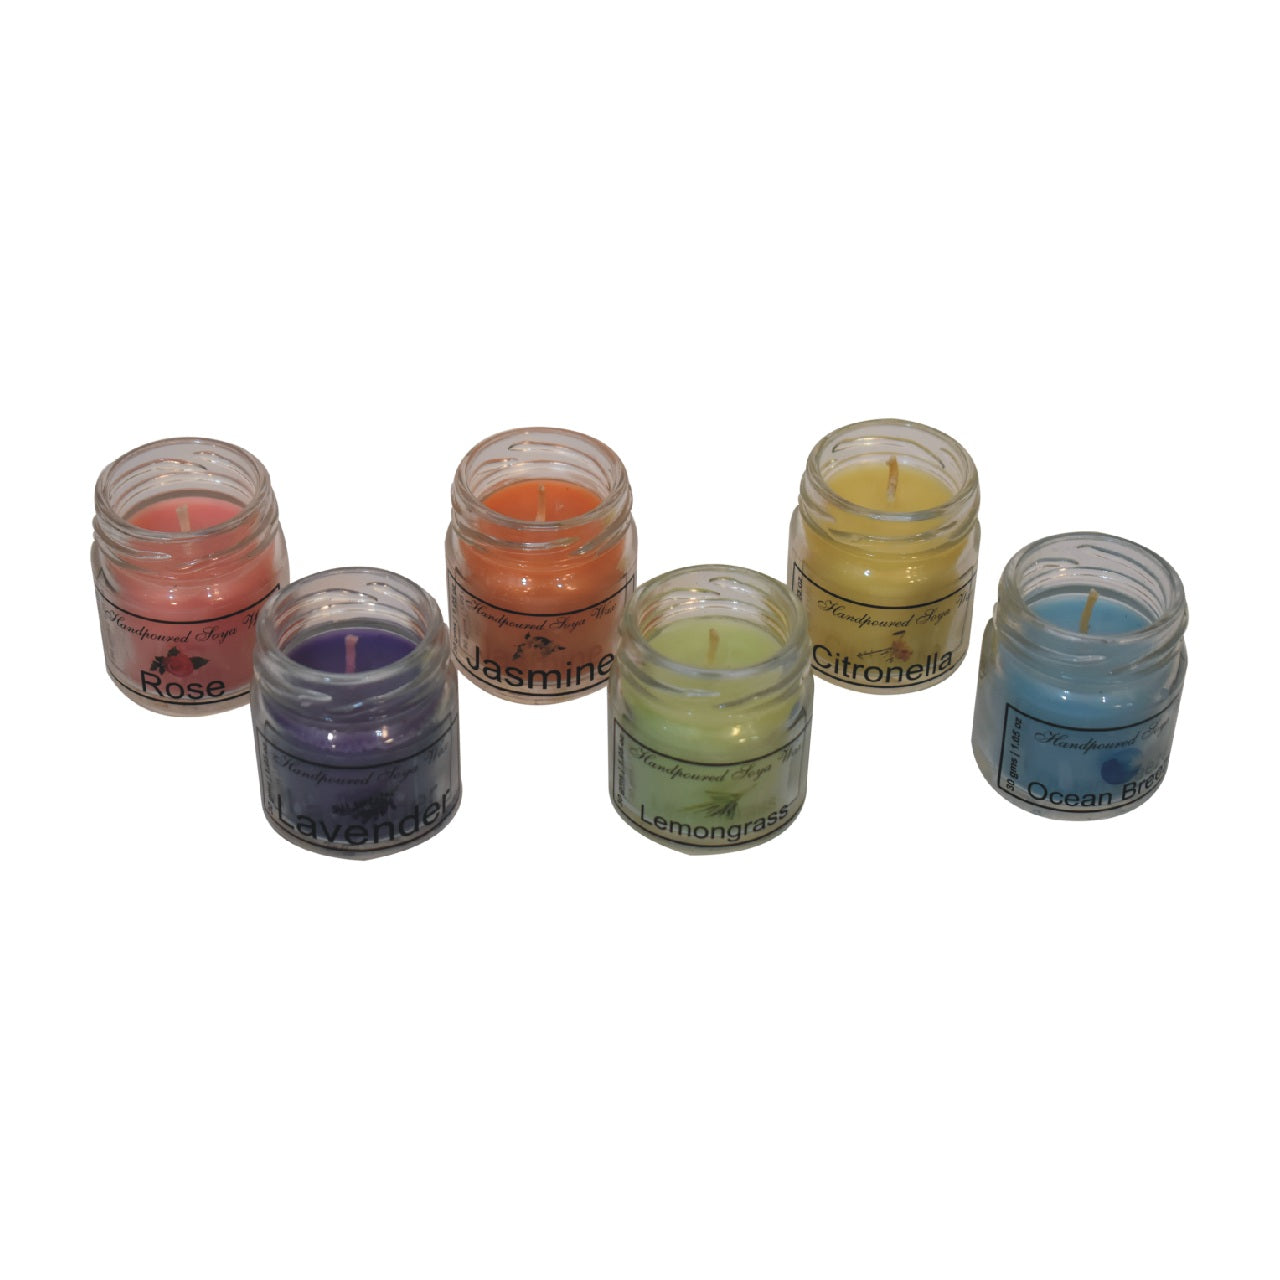 Mini-Kerzen-Set mit 6 Stück (Zitronengras, Lavendel, Rose, Citronella, Jasmin und Sommerfluten)